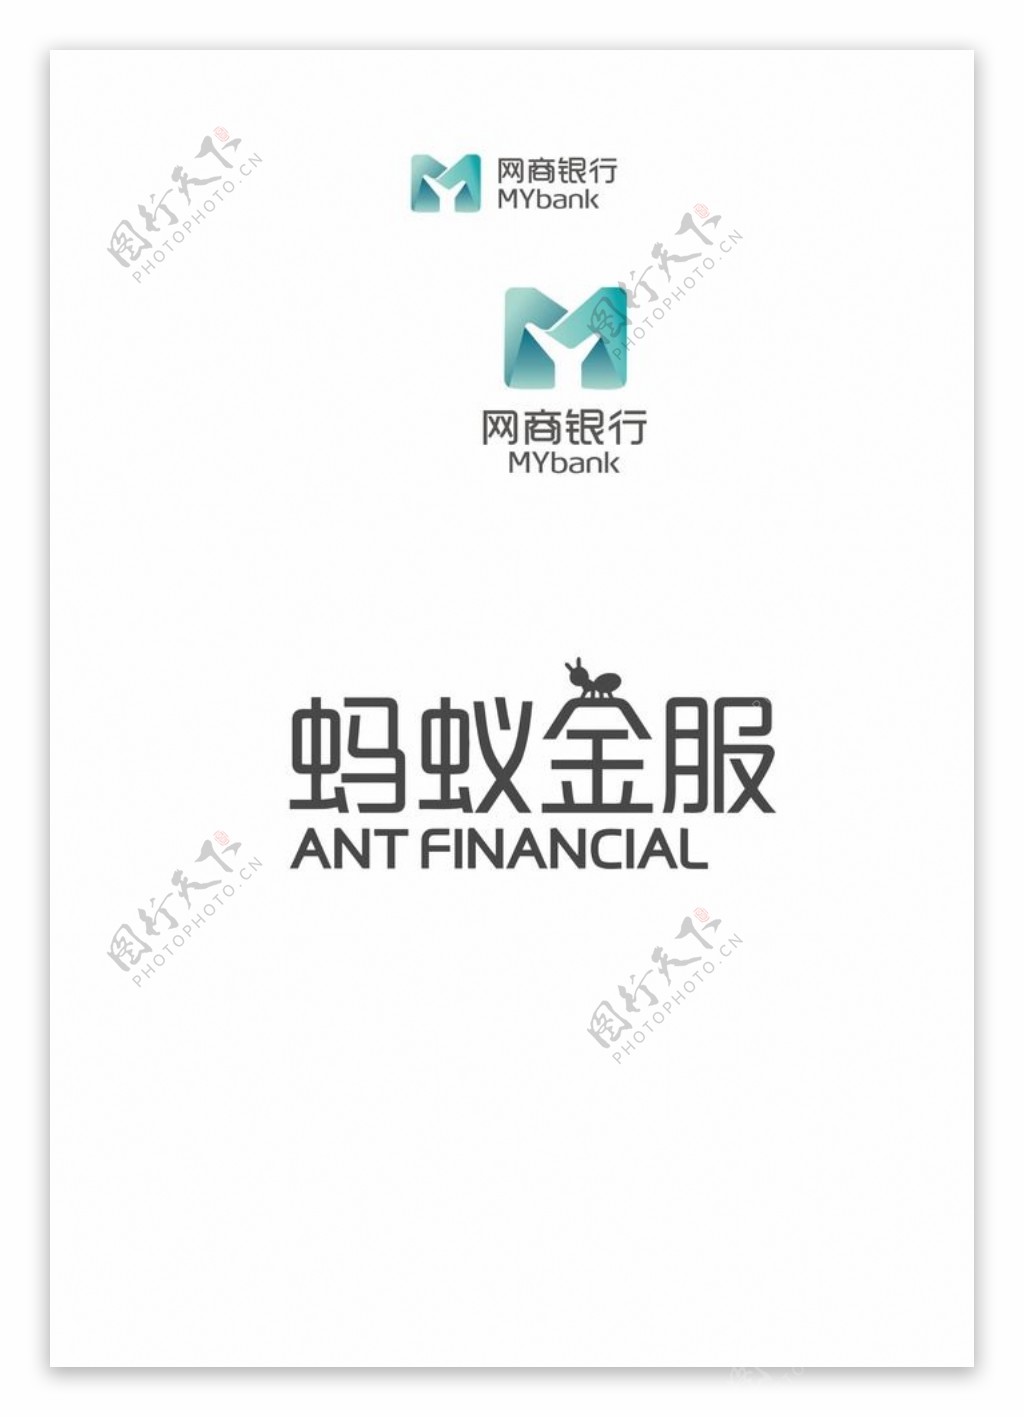 网商银行logo蚂蚁金服